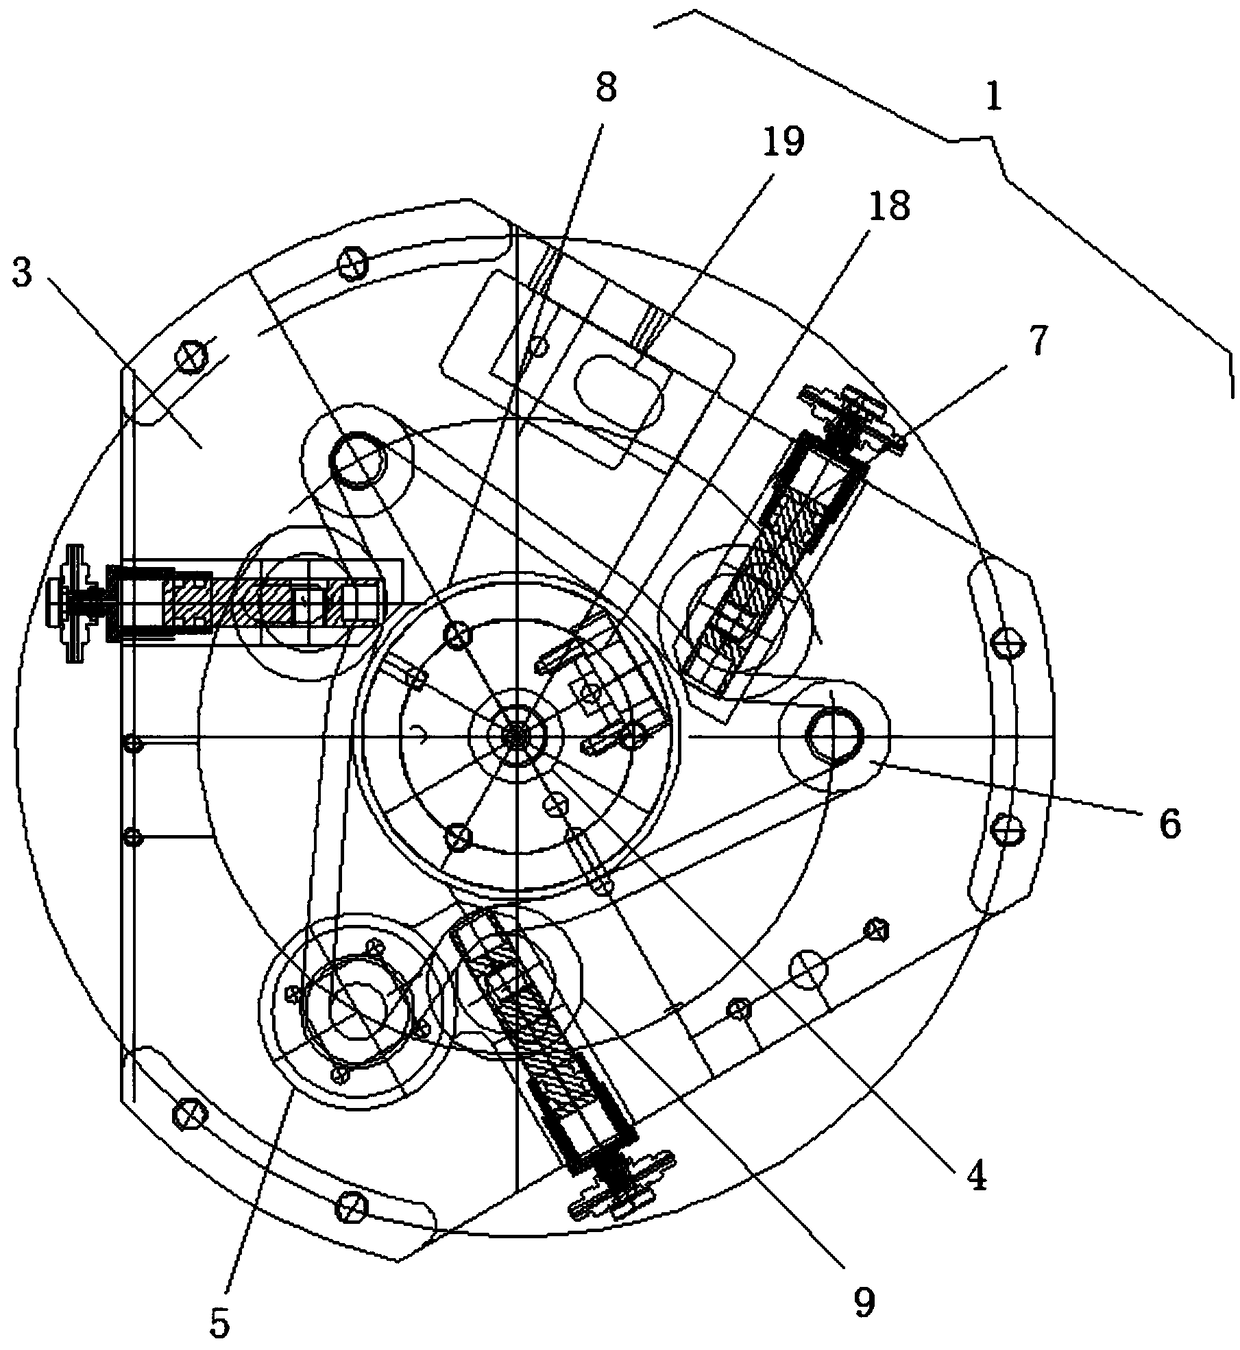 Full-automatic piston type pressure gauge